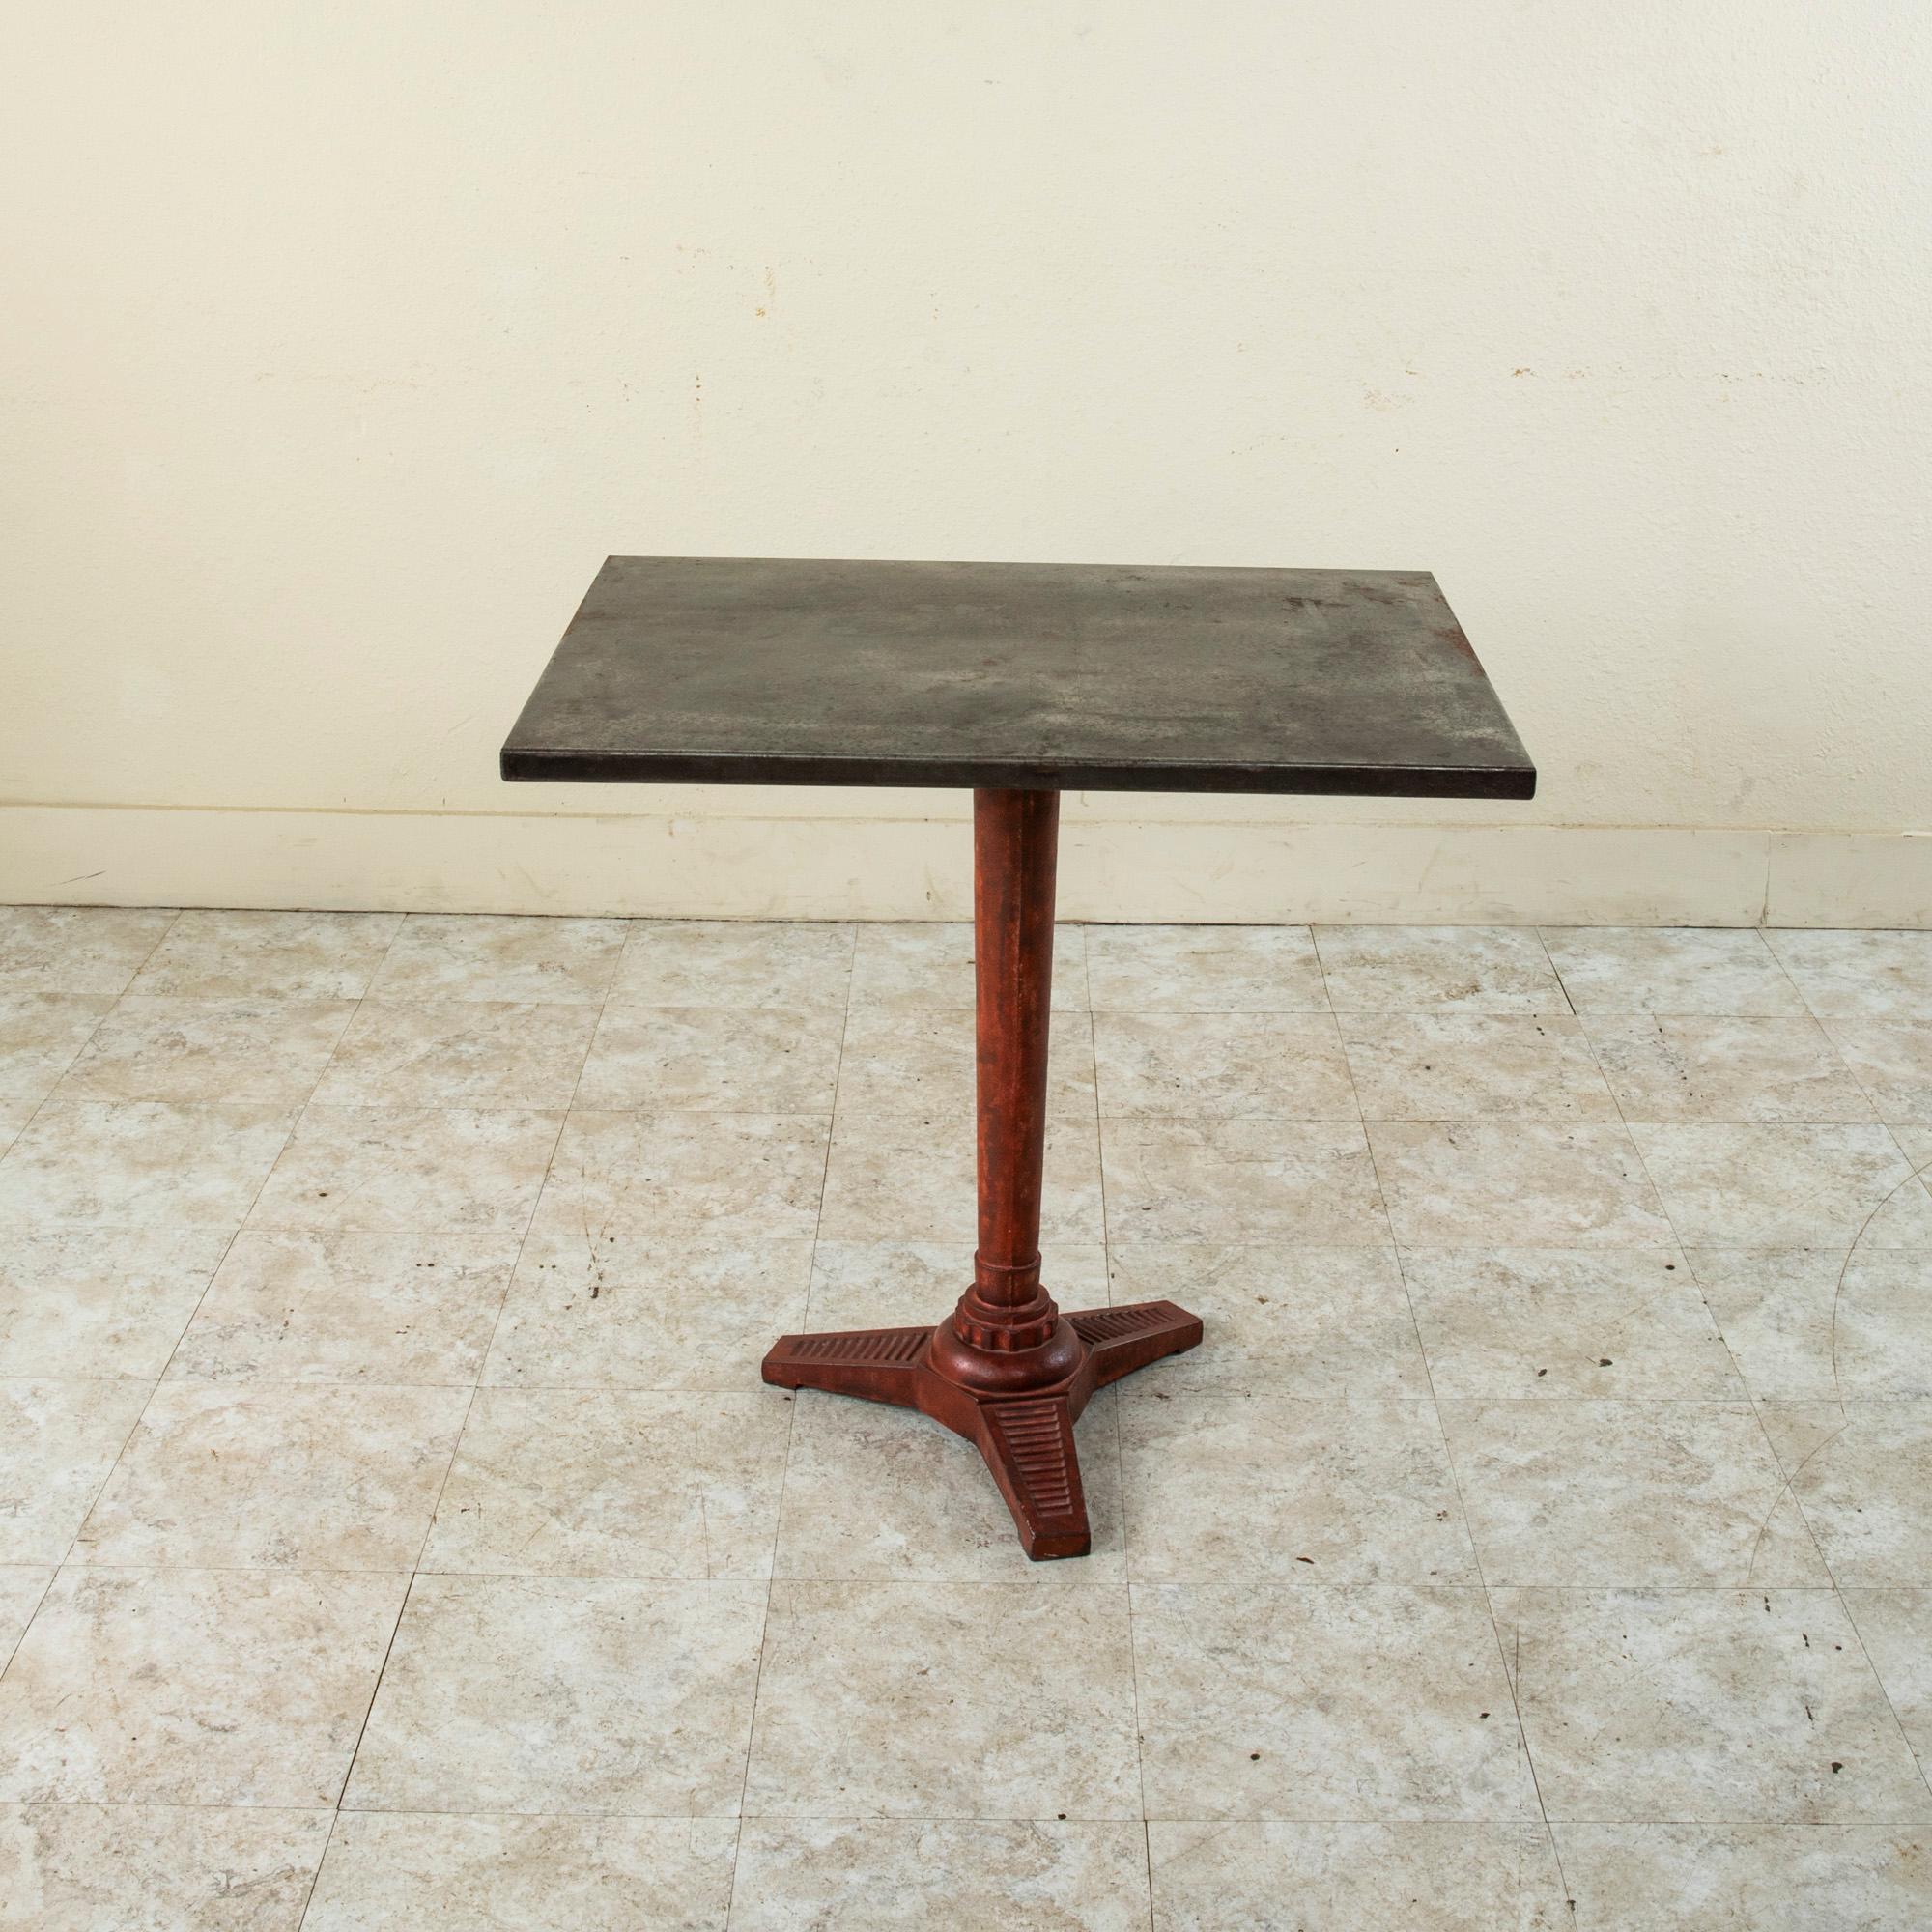 Cette table de bistrot ou table de café rectangulaire de style Art déco français du début du XXe siècle présente un plateau en métal sur un socle en fonte. La base est peinte en rouge et repose sur des pieds tripodes ornés de stries. Une table